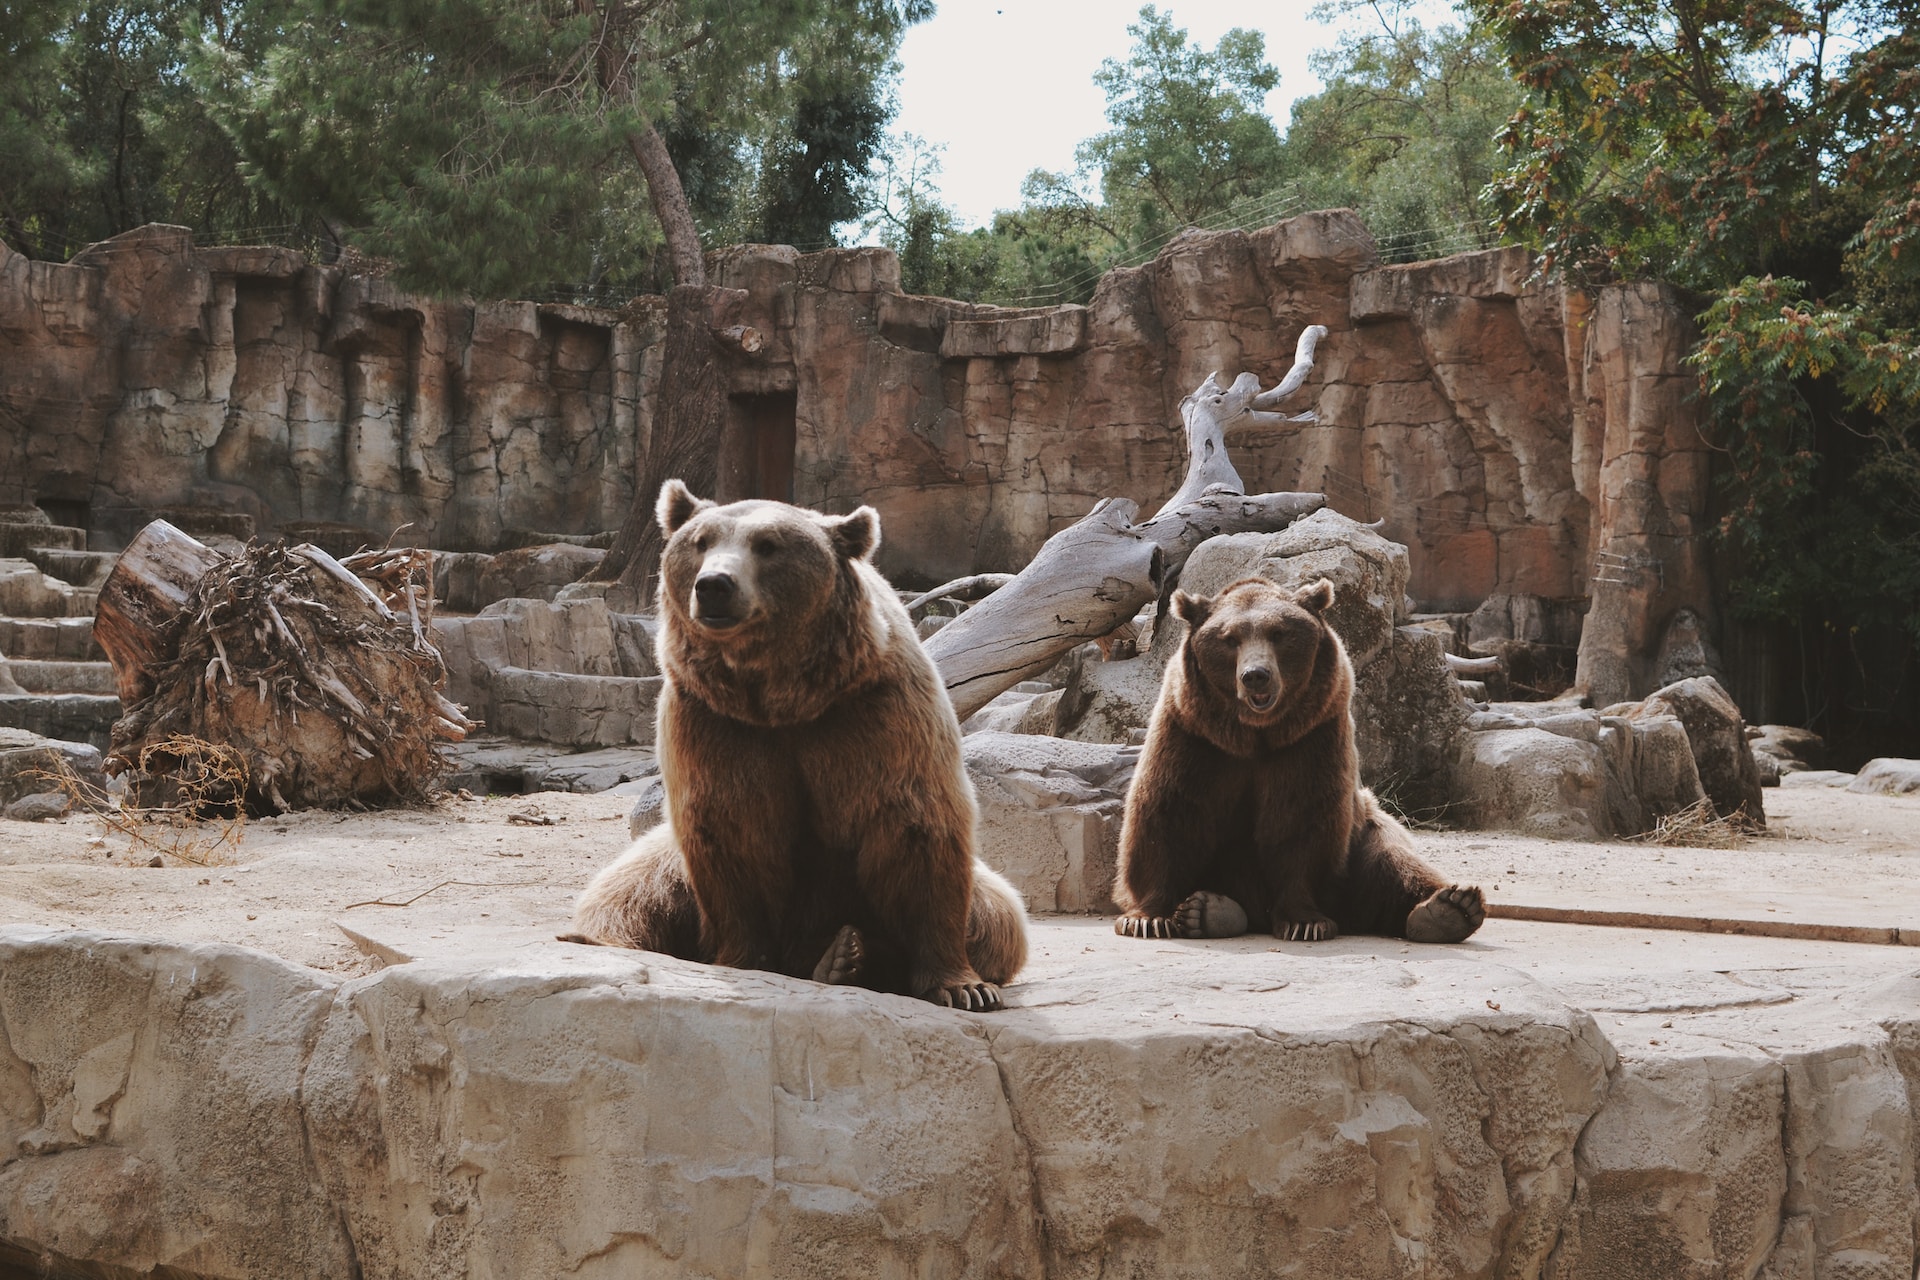 Bears at a zoo